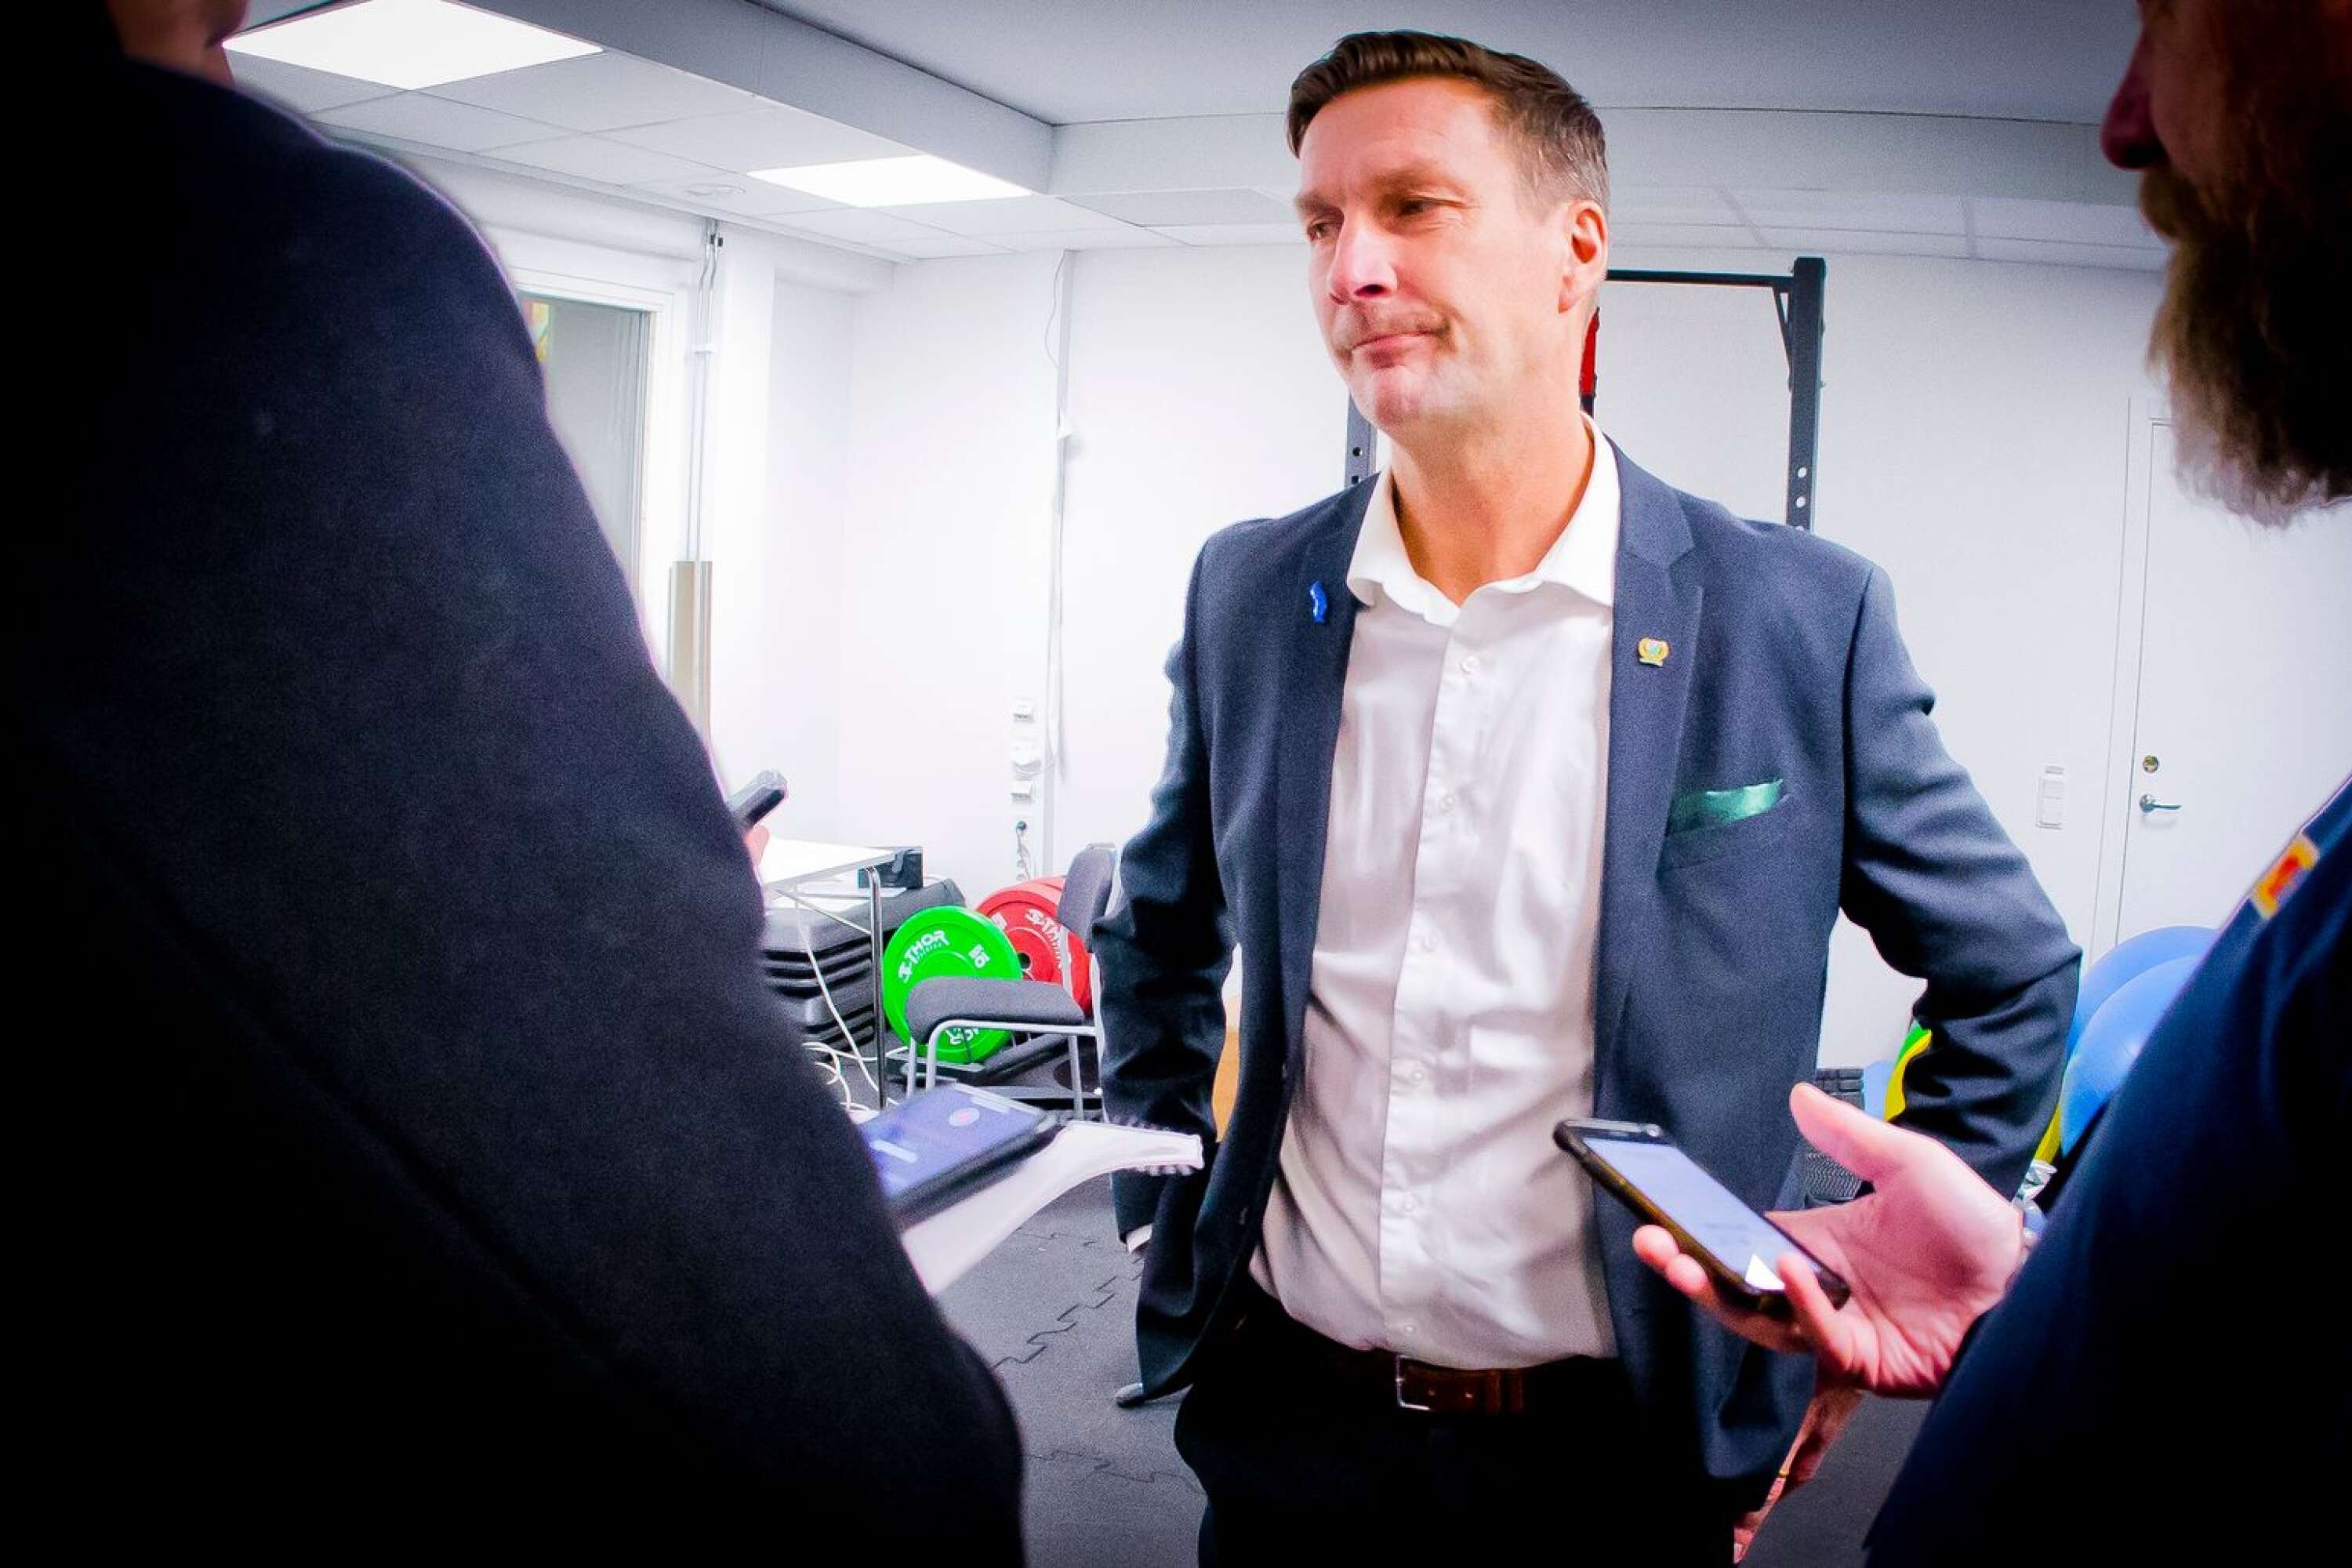 Johan Pennerborn möter media efter uddamålsförlusten i Örebro. ”Jag är en krigare och vill fortsätta”, säger han. 